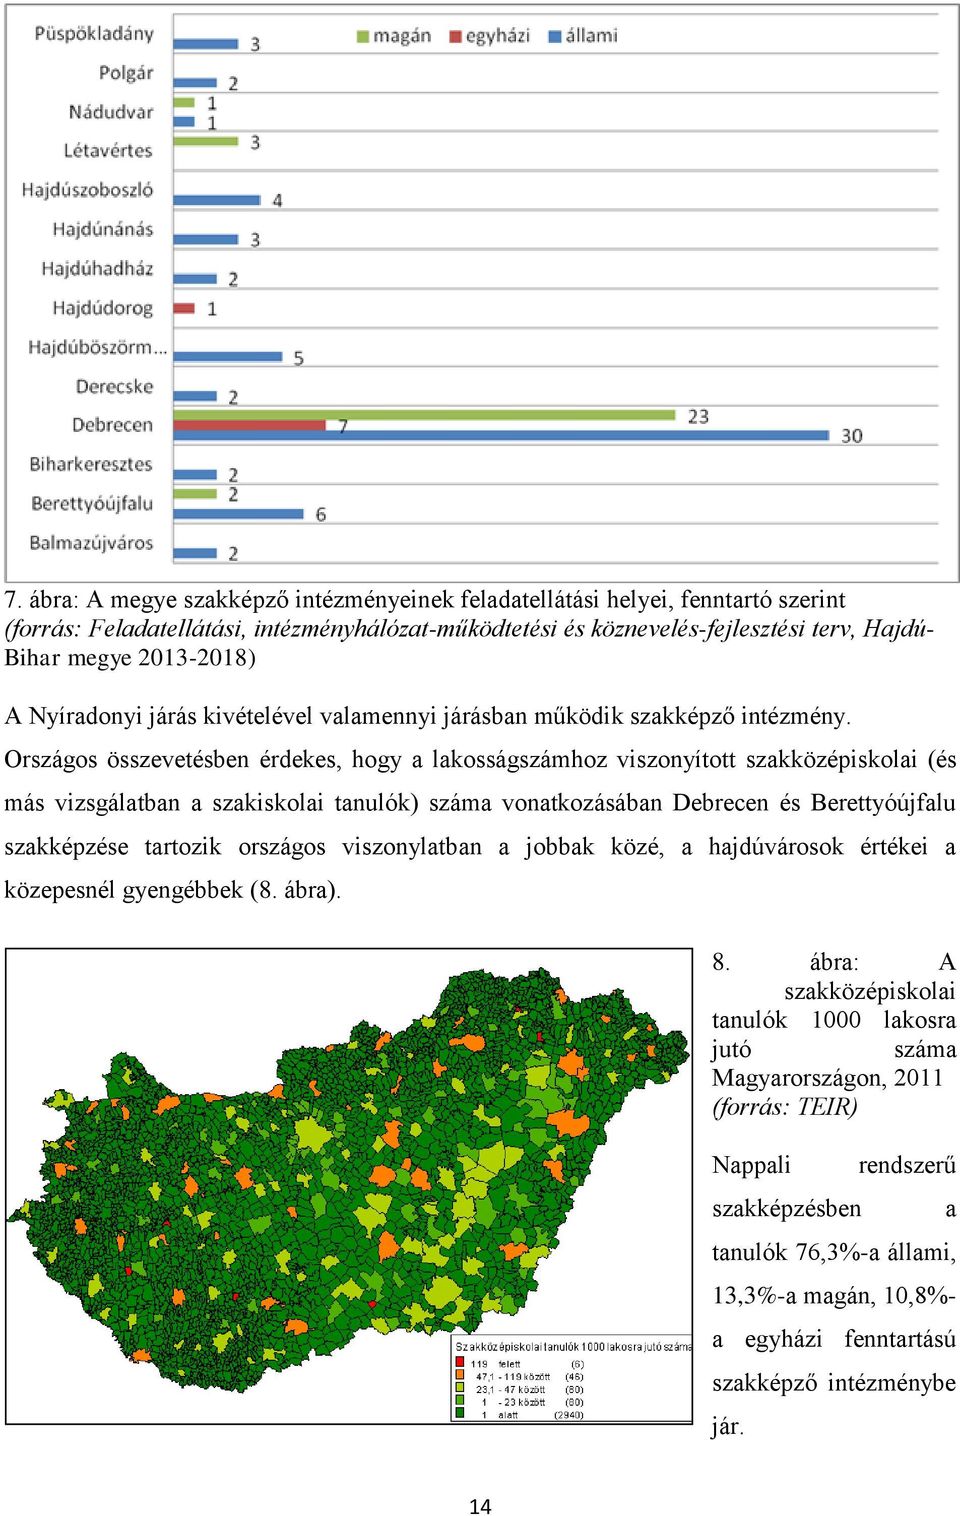 Országos összevetésben érdekes, hogy a lakosságszámhoz viszonyított szakközépiskolai (és más vizsgálatban a szakiskolai tanulók) száma vonatkozásában Debrecen és Berettyóújfalu szakképzése tartozik